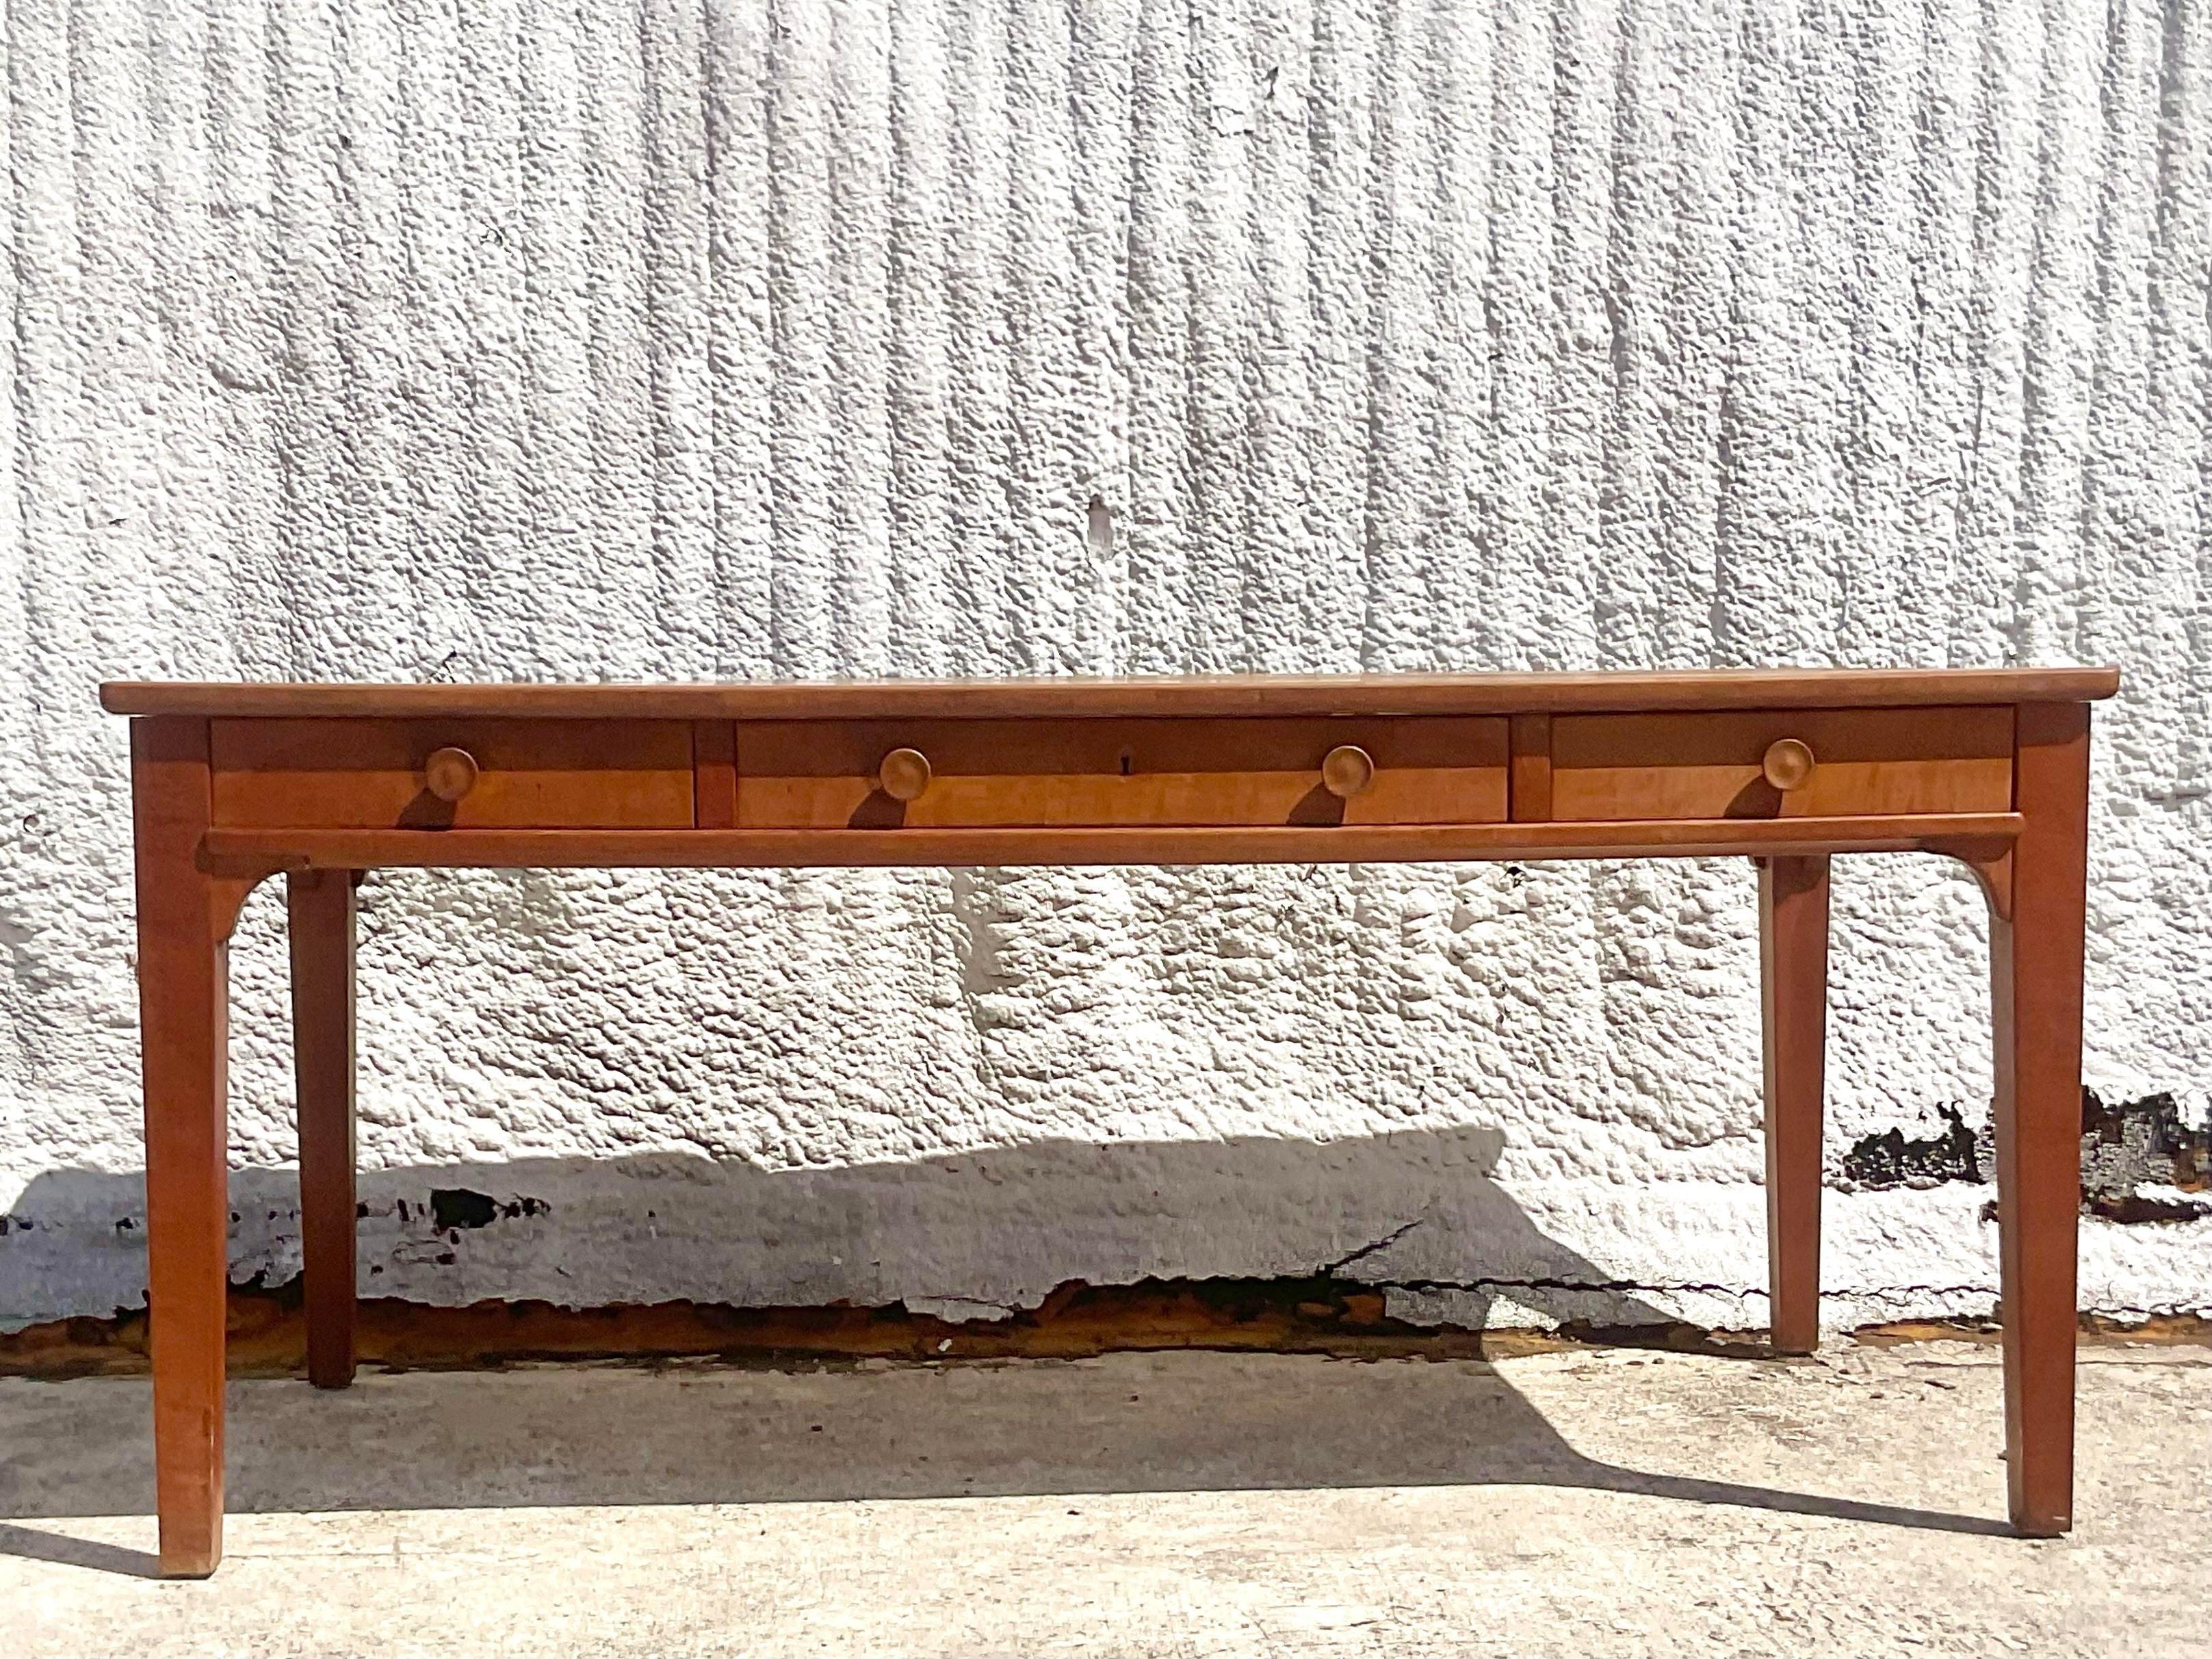 Adoptez le charme rustique de l'artisanat américain avec notre table de bibliothèque Vintage Boho Rustique. Fabriquée à la main avec une élégance robuste, cette table évoque l'esprit d'une époque révolue, vous invitant à vous réunir, à créer et à